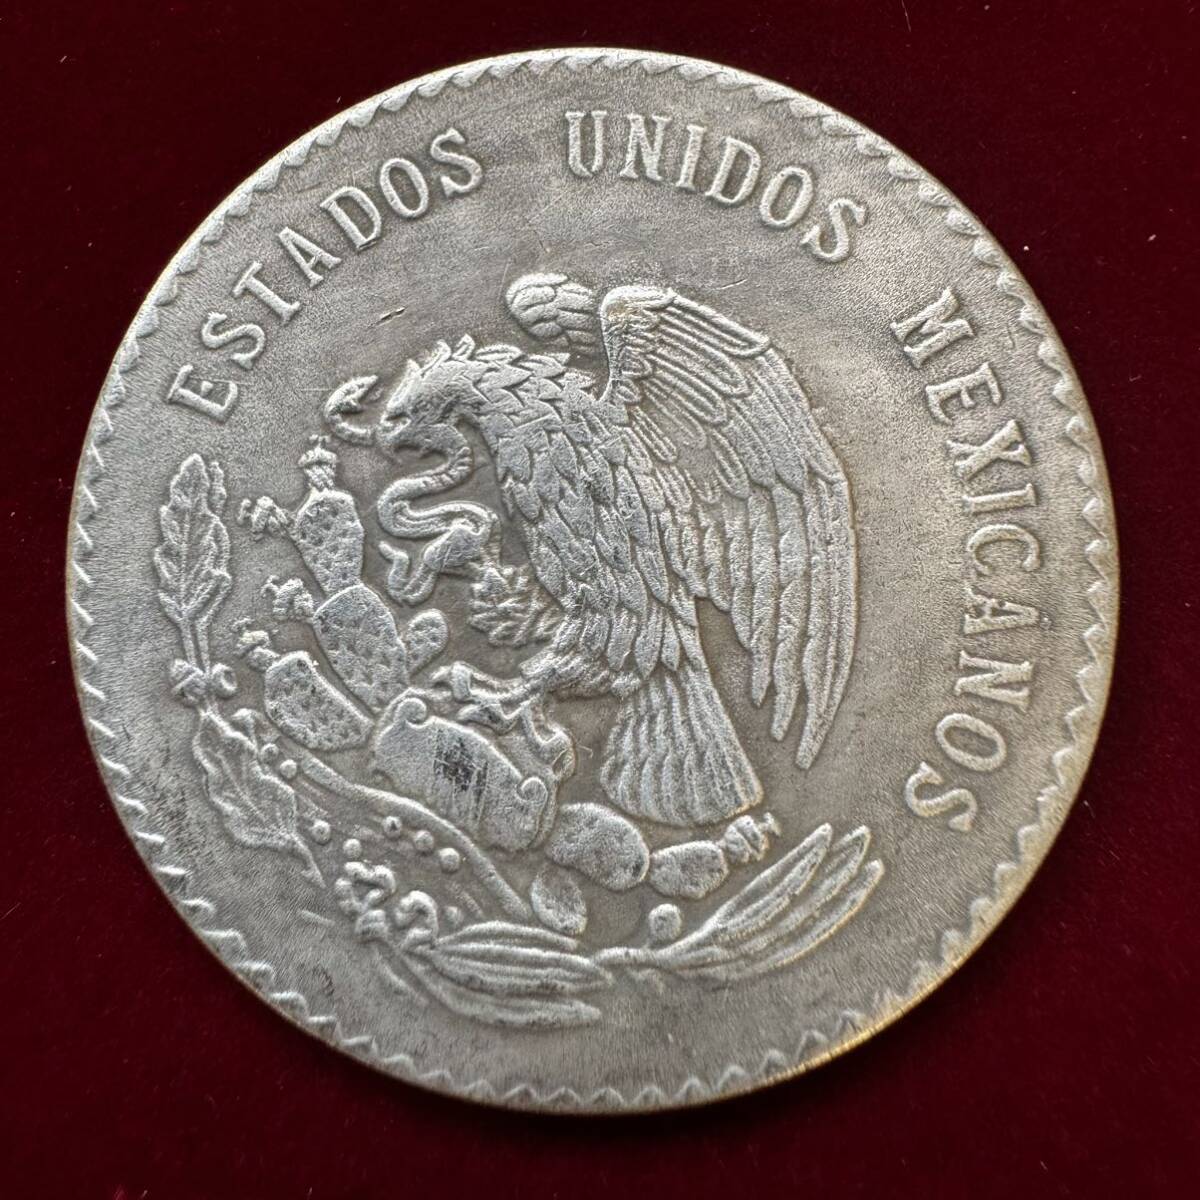 メキシコ アステカ族 硬貨 古銭 1947年 「メキシコ合衆国」 「族長クアウテモック」銘 ペソ 国章 鷲 コイン 銀貨 外国古銭 海外硬貨 の画像2